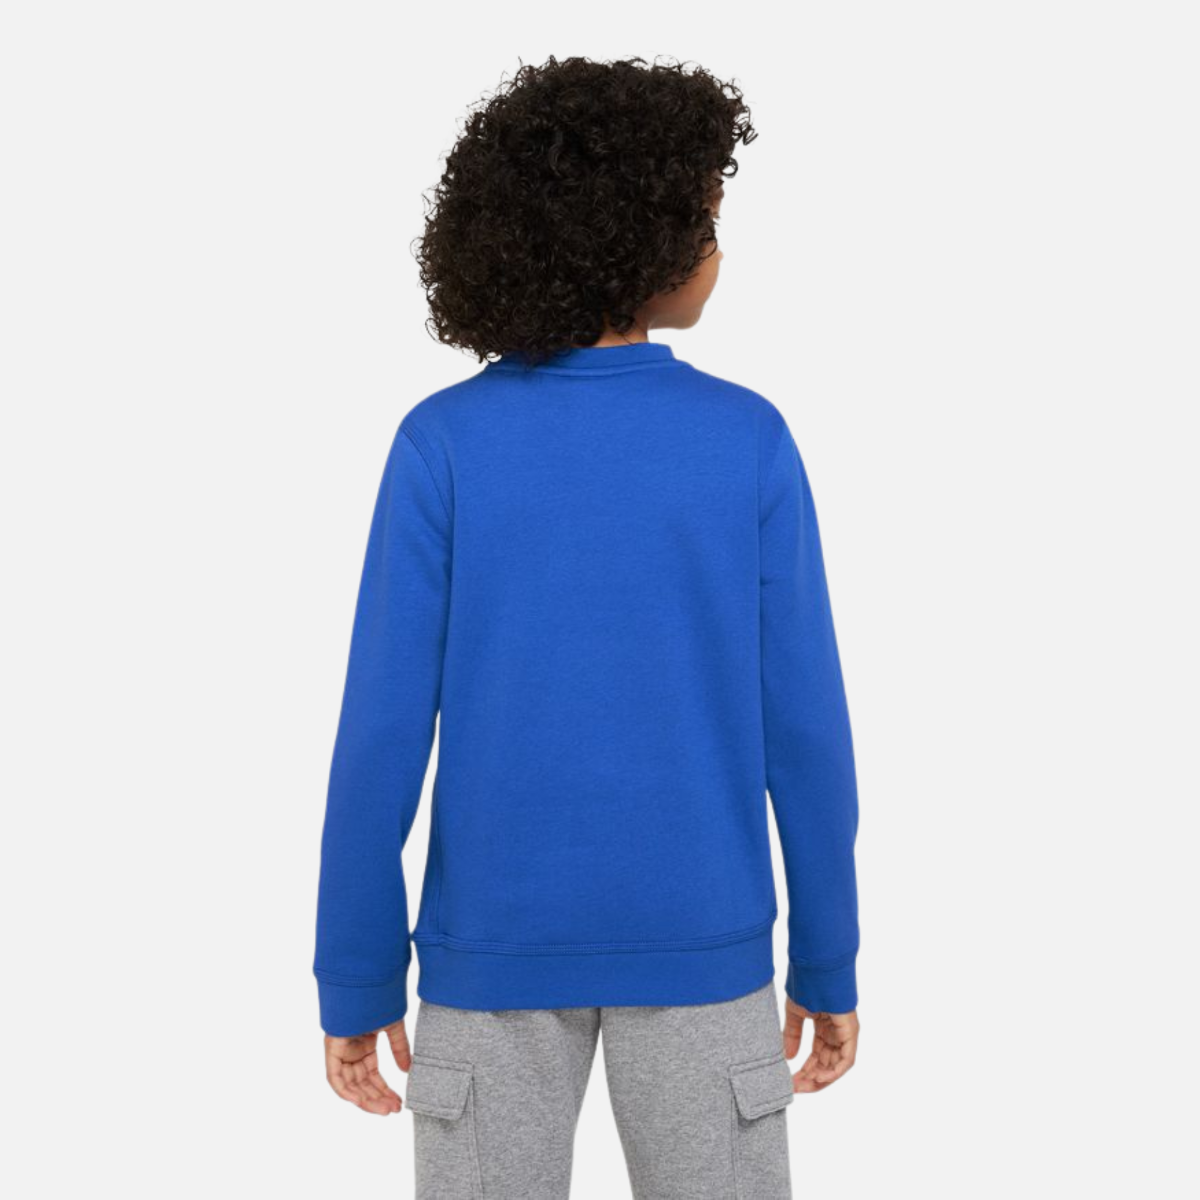 Nike Tech Fleece Junior – Blau/Weiß/Rouge